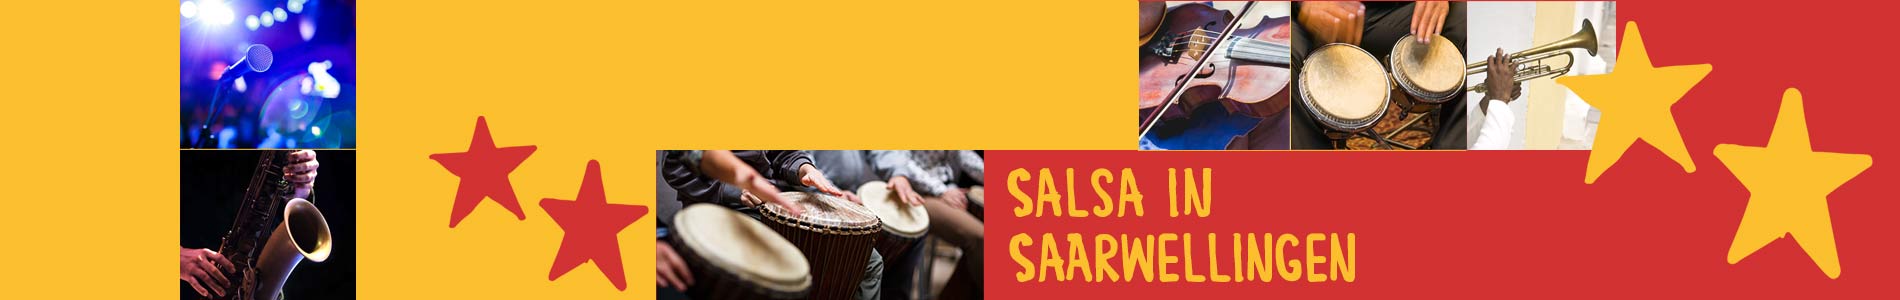 Salsa in Saarwellingen – Salsa lernen und tanzen, Tanzkurse, Partys, Veranstaltungen